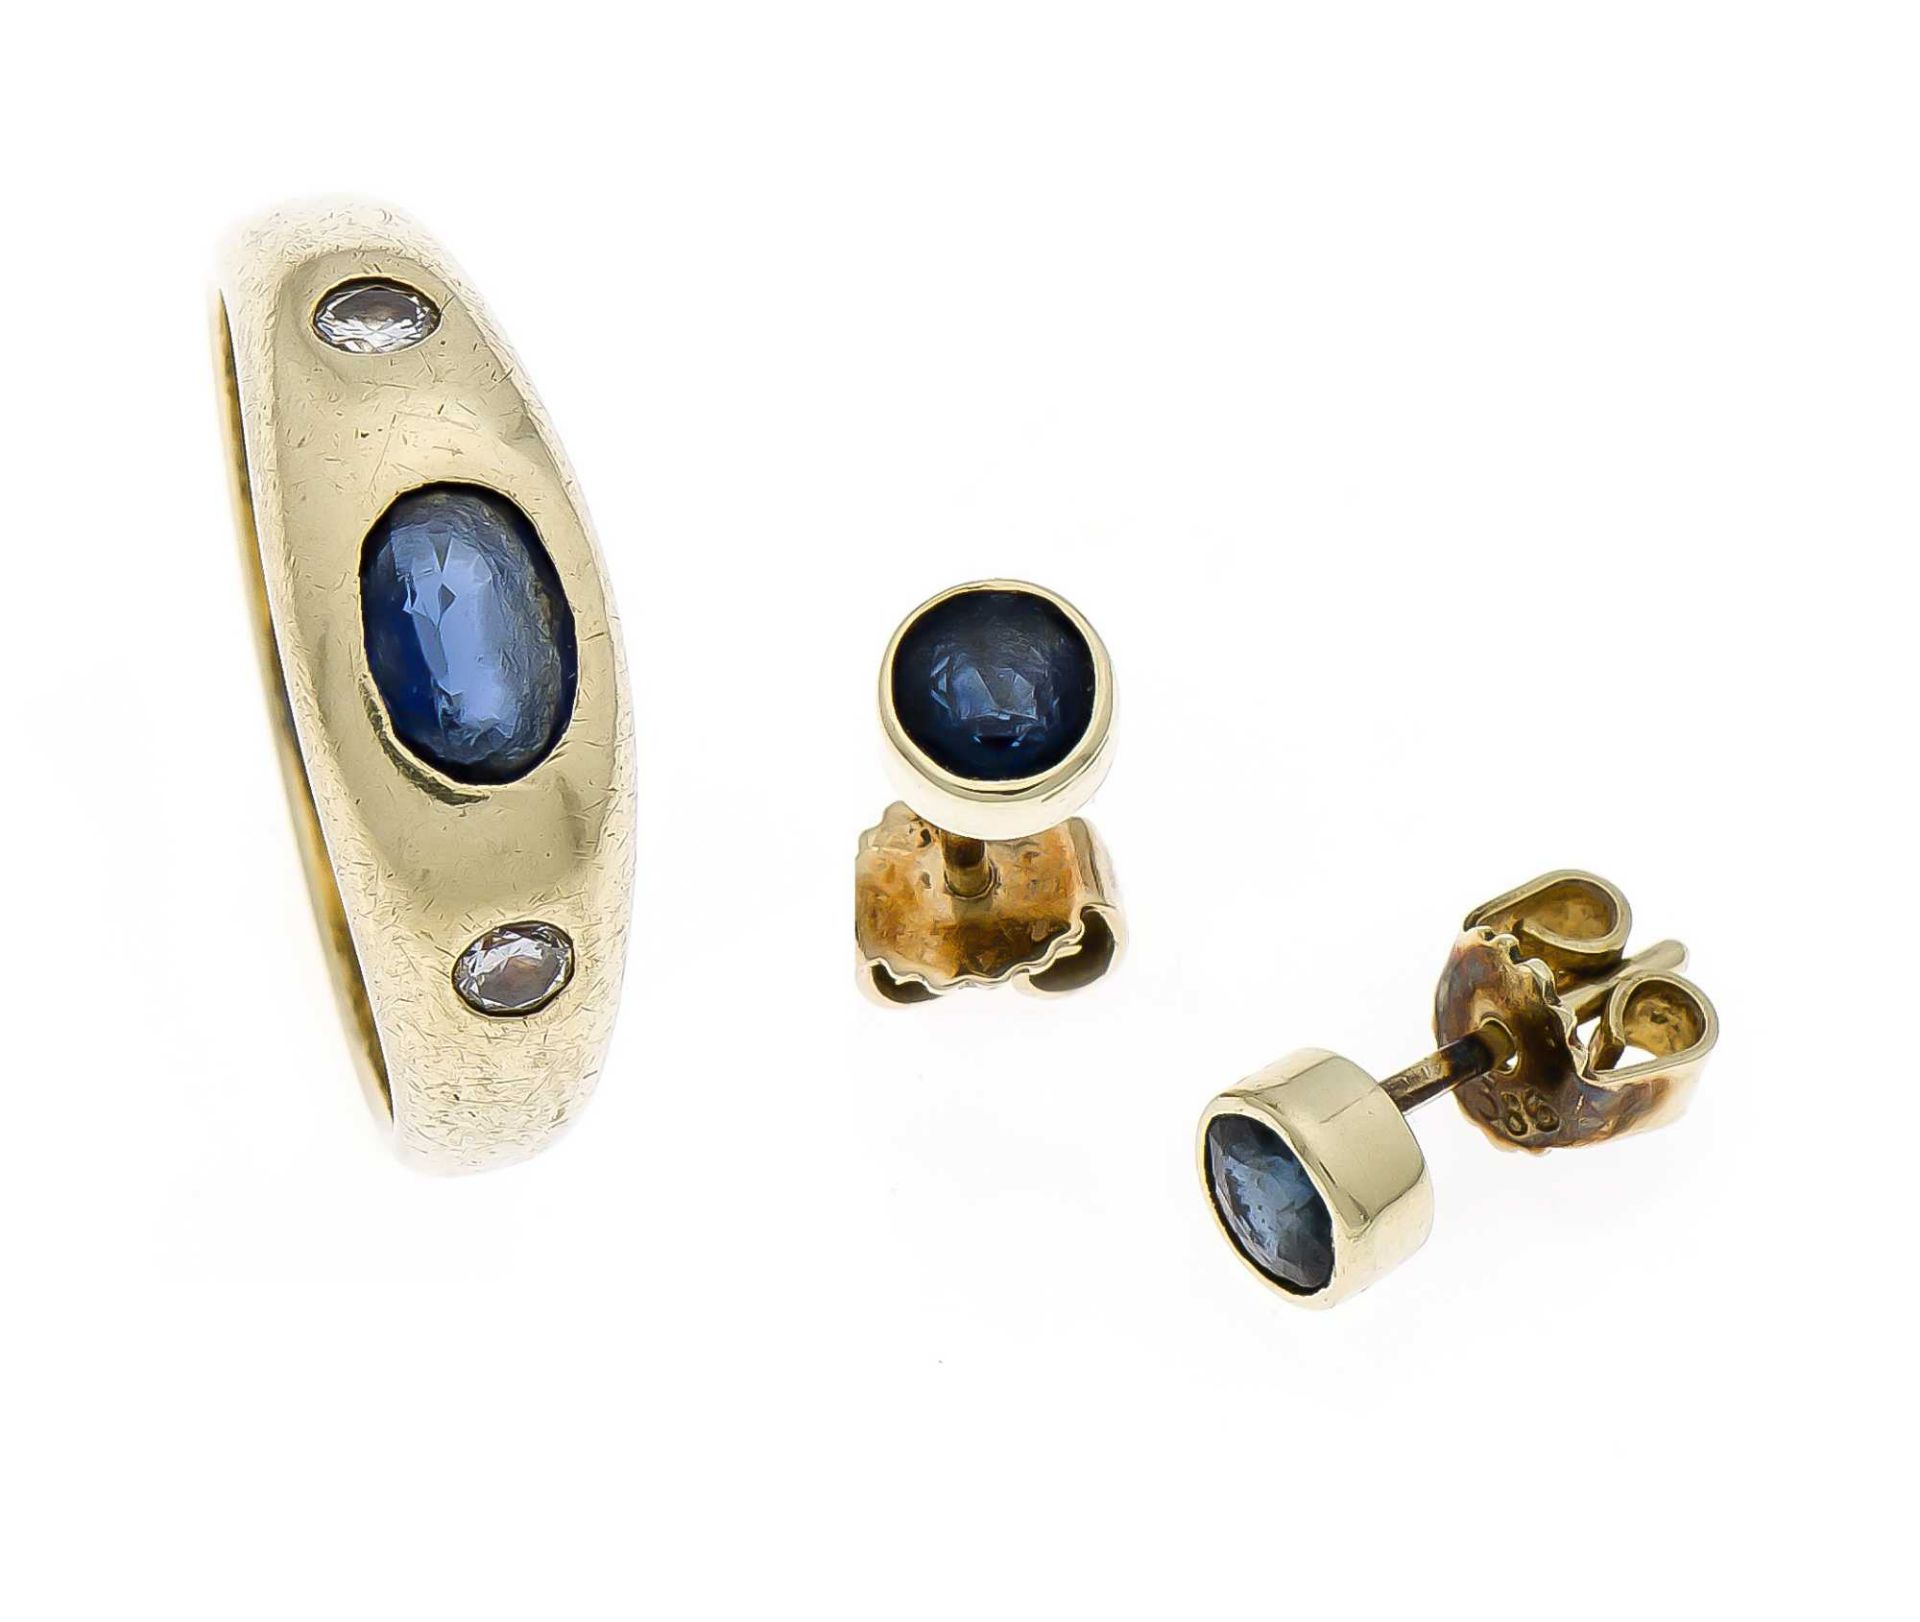 Saphir-Brillant-Ring GG 585/000 mit einem oval fac. Saphir 6 x 4 mm und 2 Brillanten, zus. 0,10 ct